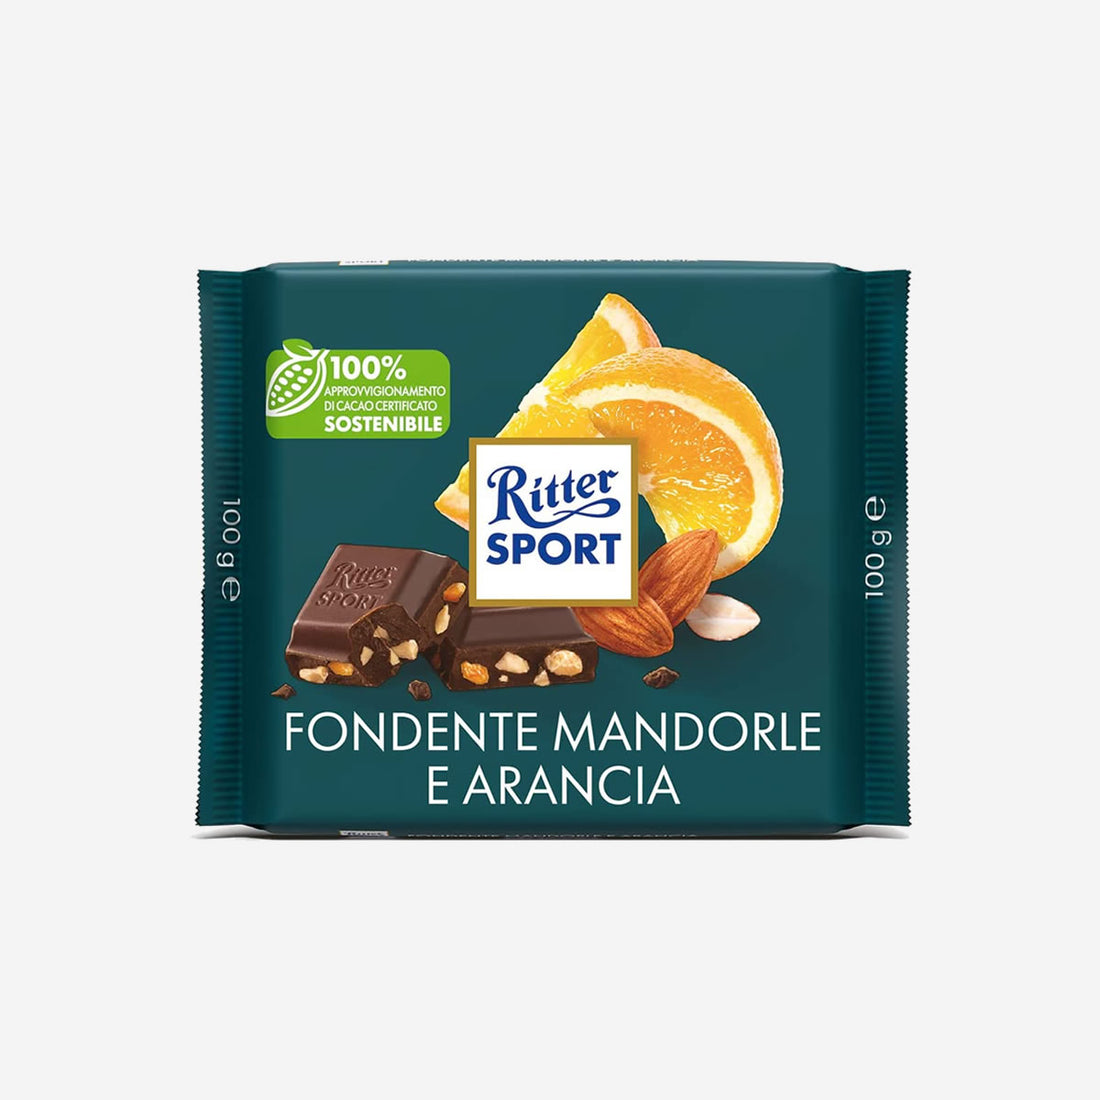 Ritter Sport Orange almond dark chocolate